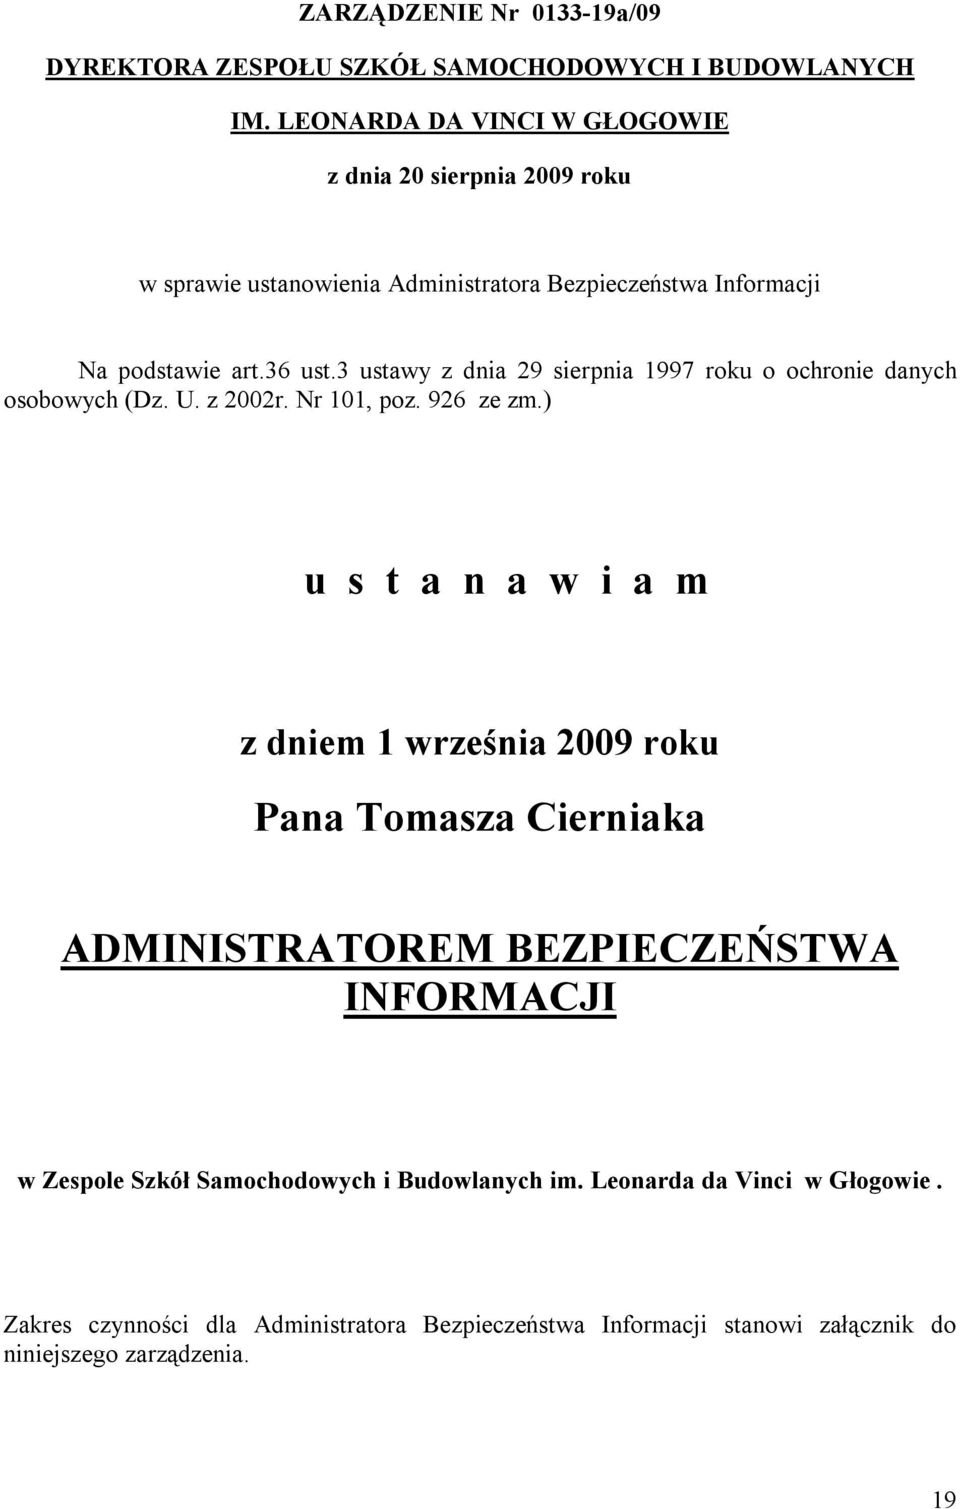 3 ustawy z dnia 29 sierpnia 1997 roku o ochronie danych osobowych (Dz. U. z 2002r. Nr 101, poz. 926 ze zm.